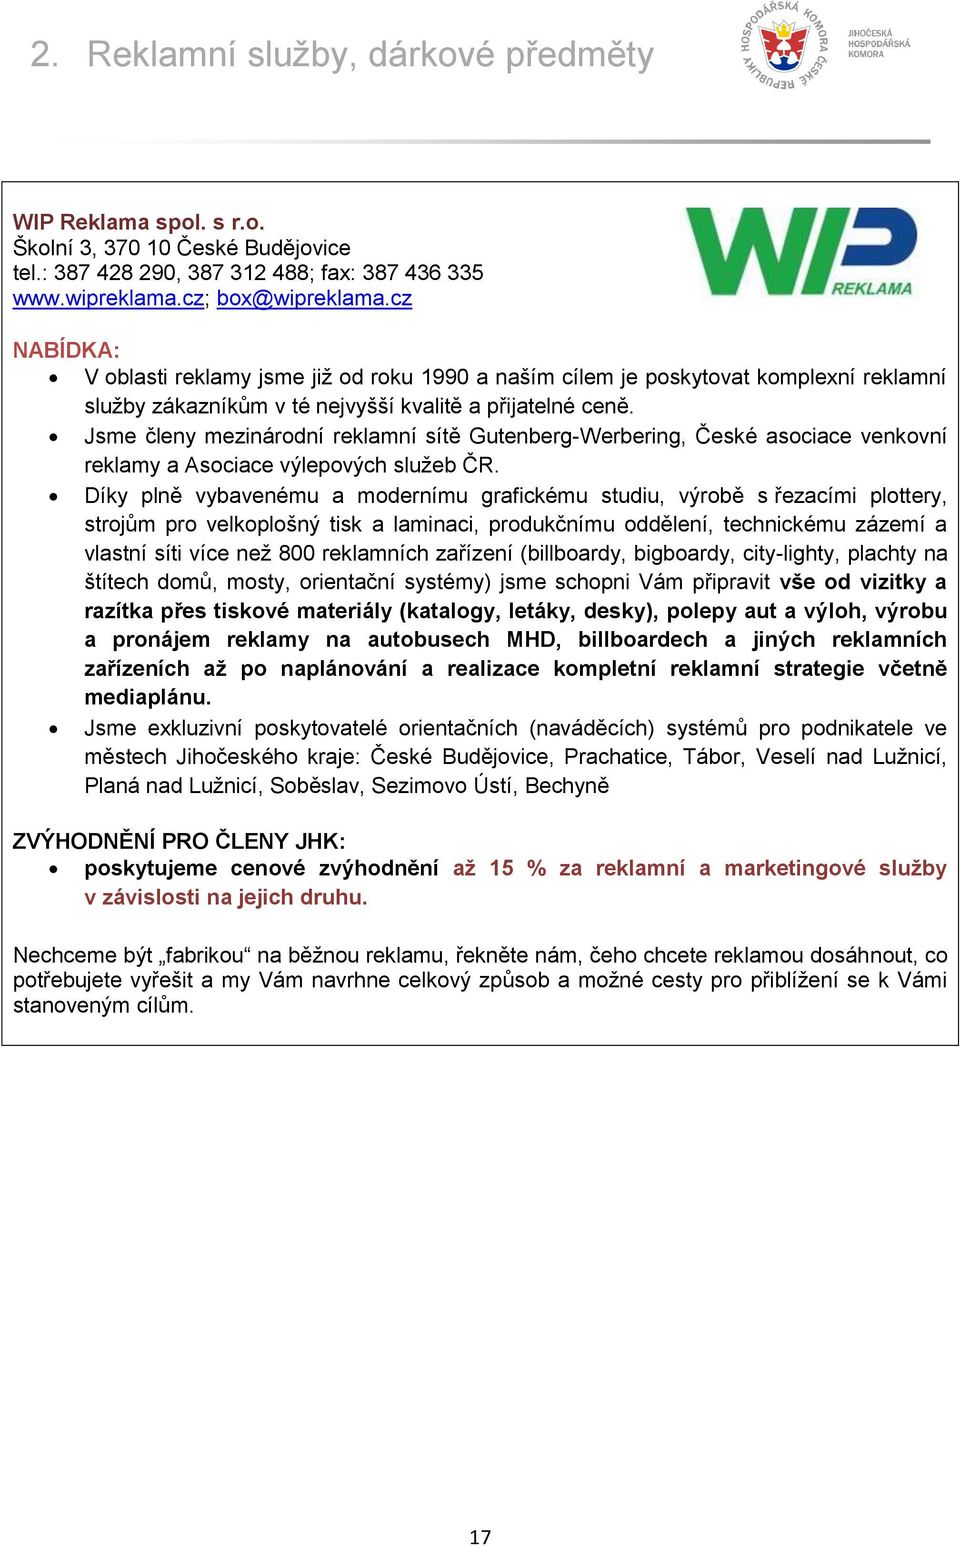 Katalog zvýhodněných služeb ČLENI ČLENŮM - PDF Free Download